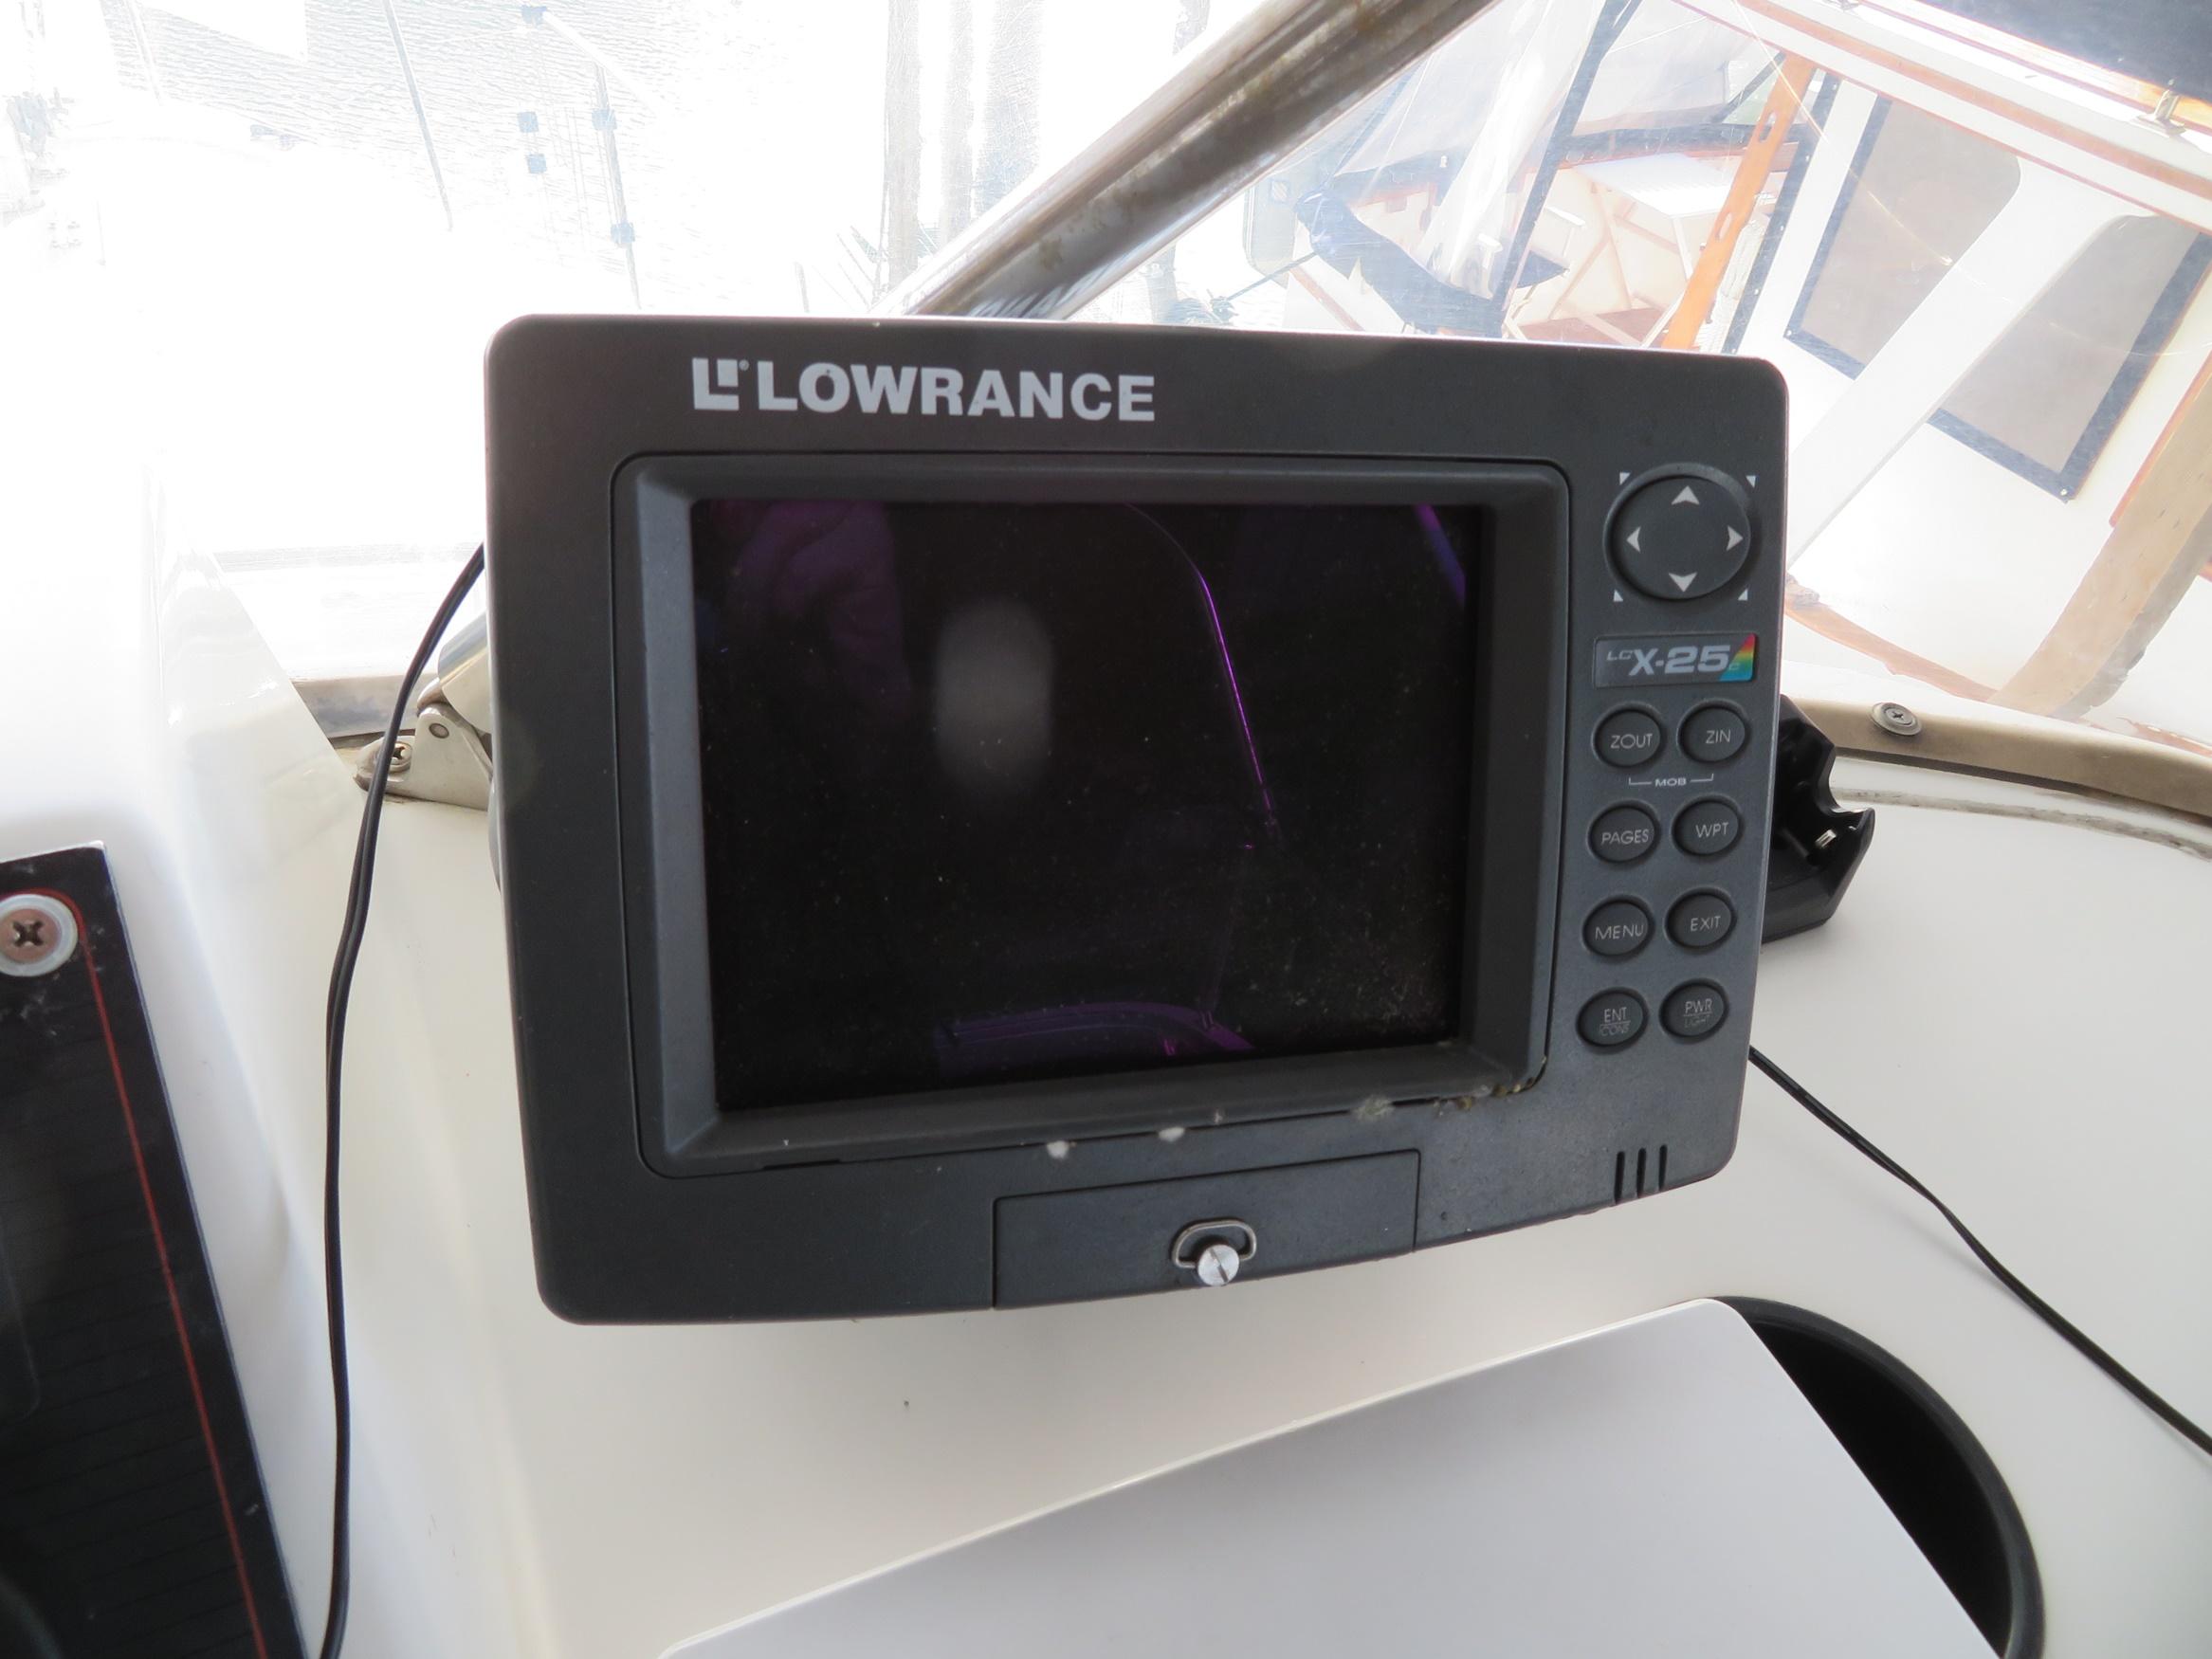 Lowrance LCX-25C